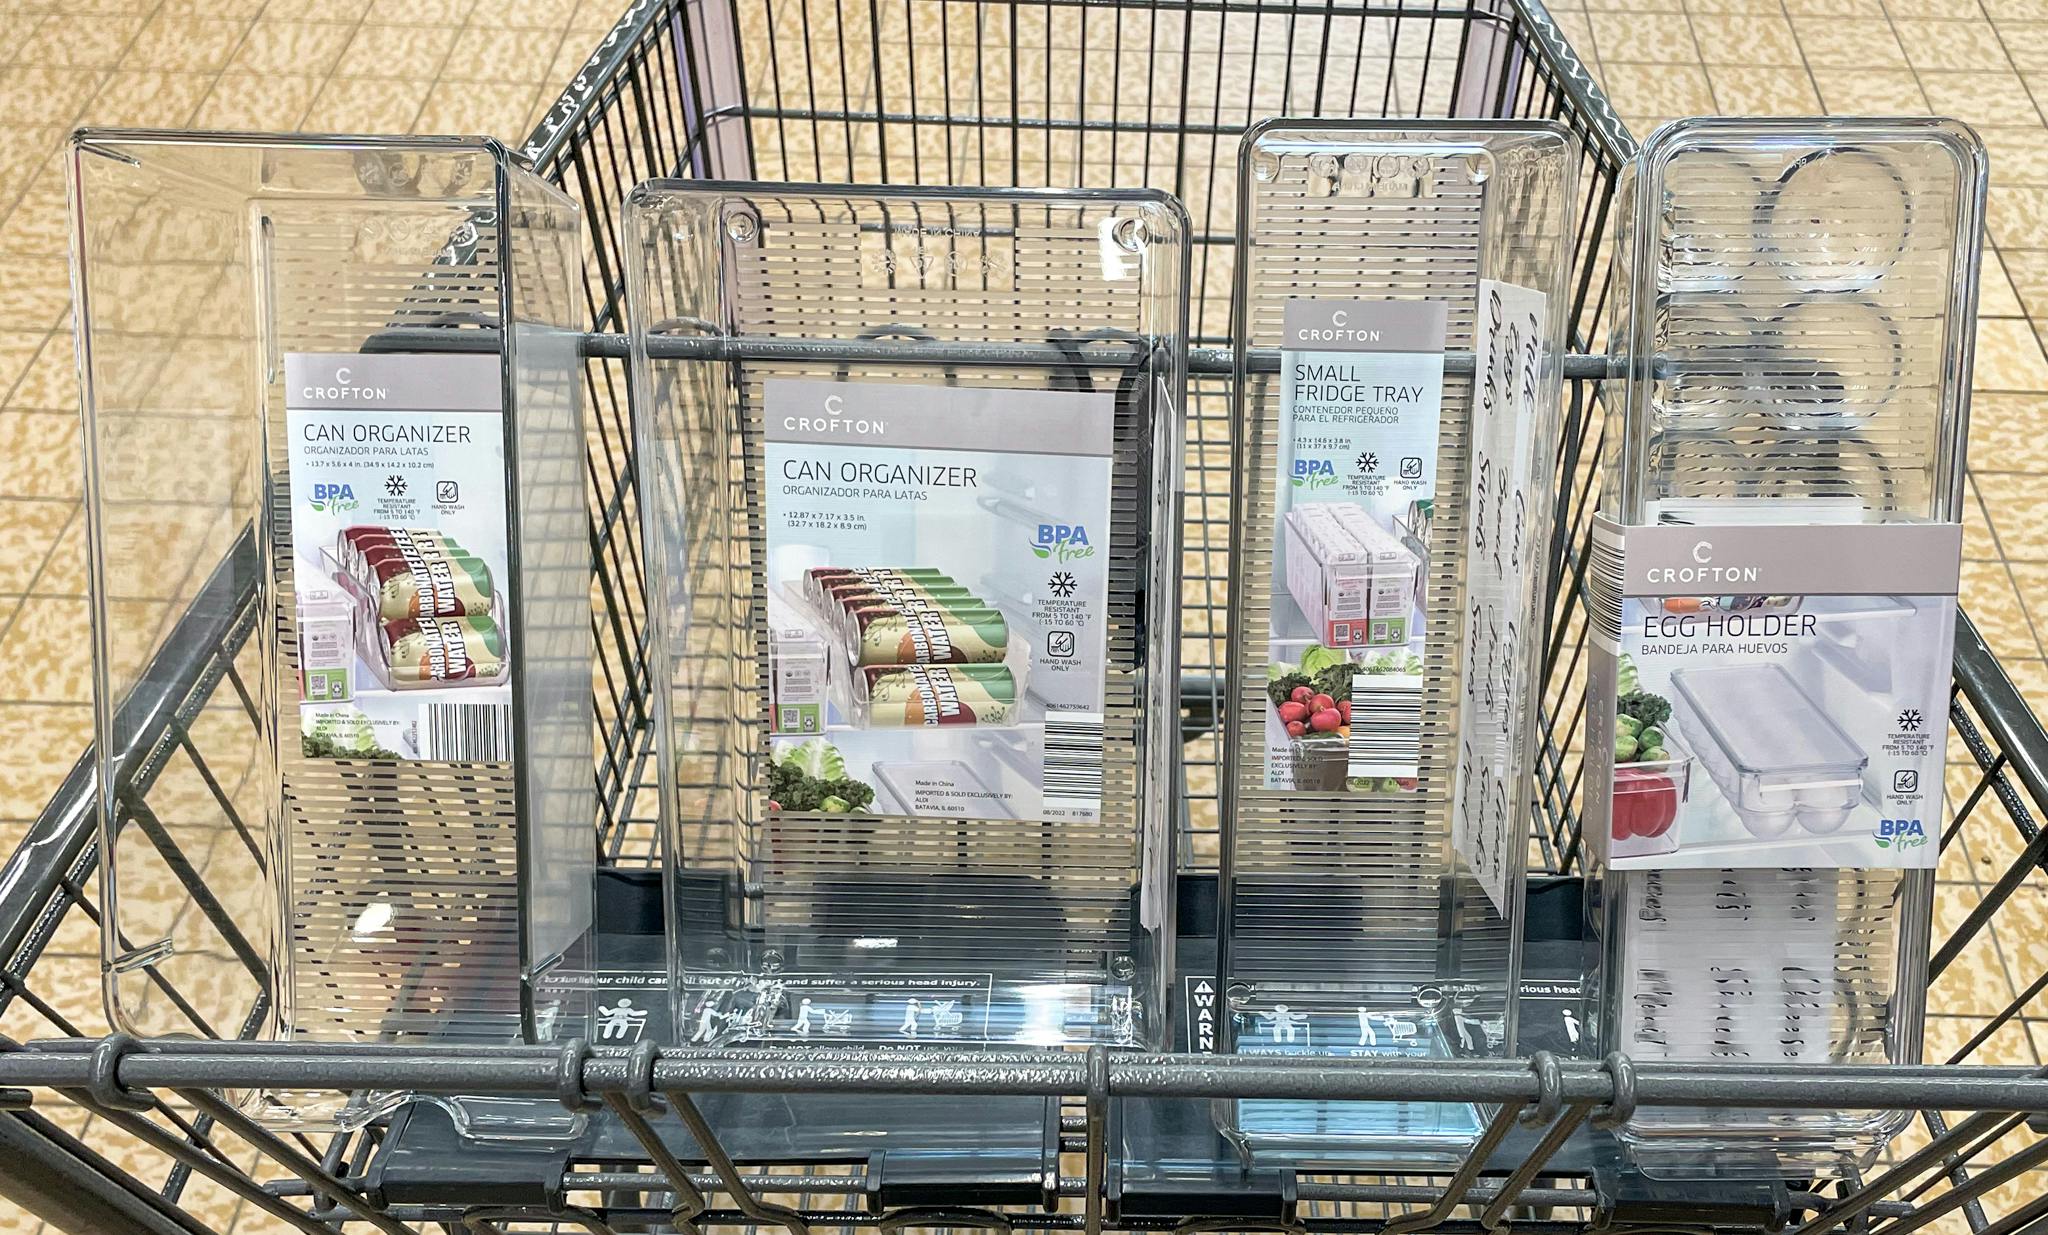 fridge trays in a cart at Aldi